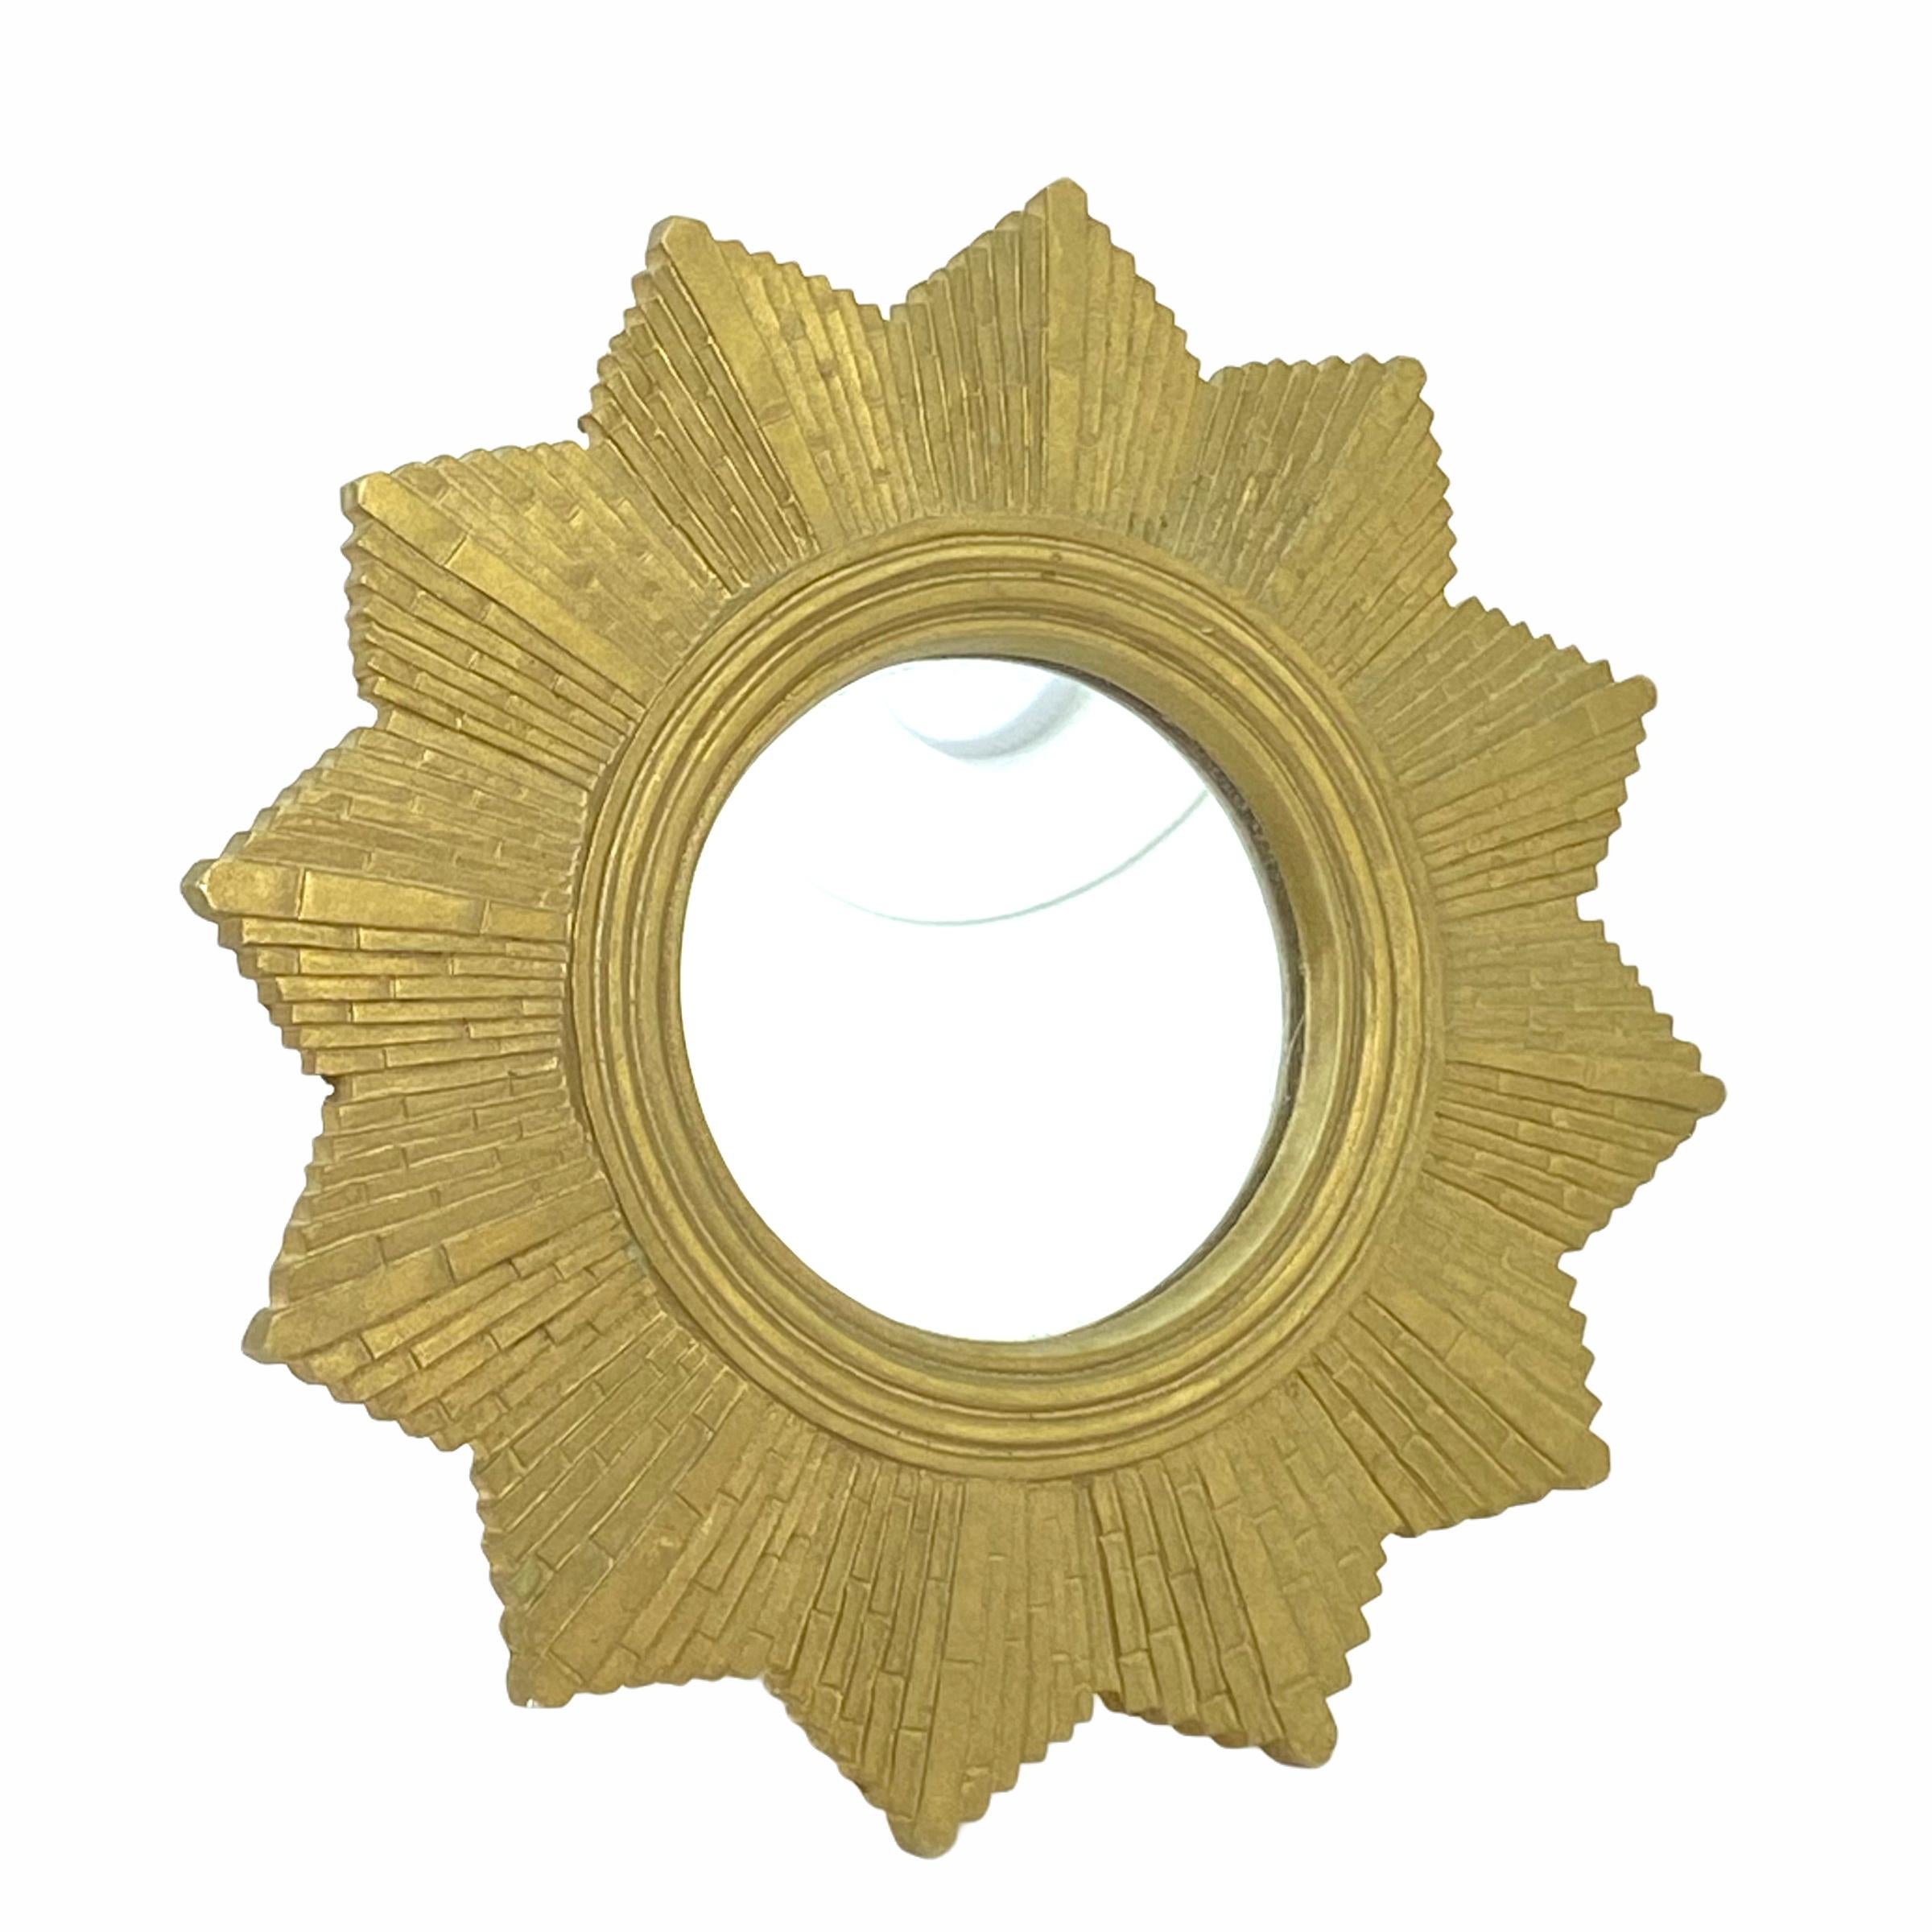 Un joli miroir en forme de soleil ou d'étoile. Réalisé en composition dorée. Il mesure approximativement : 7 1/8